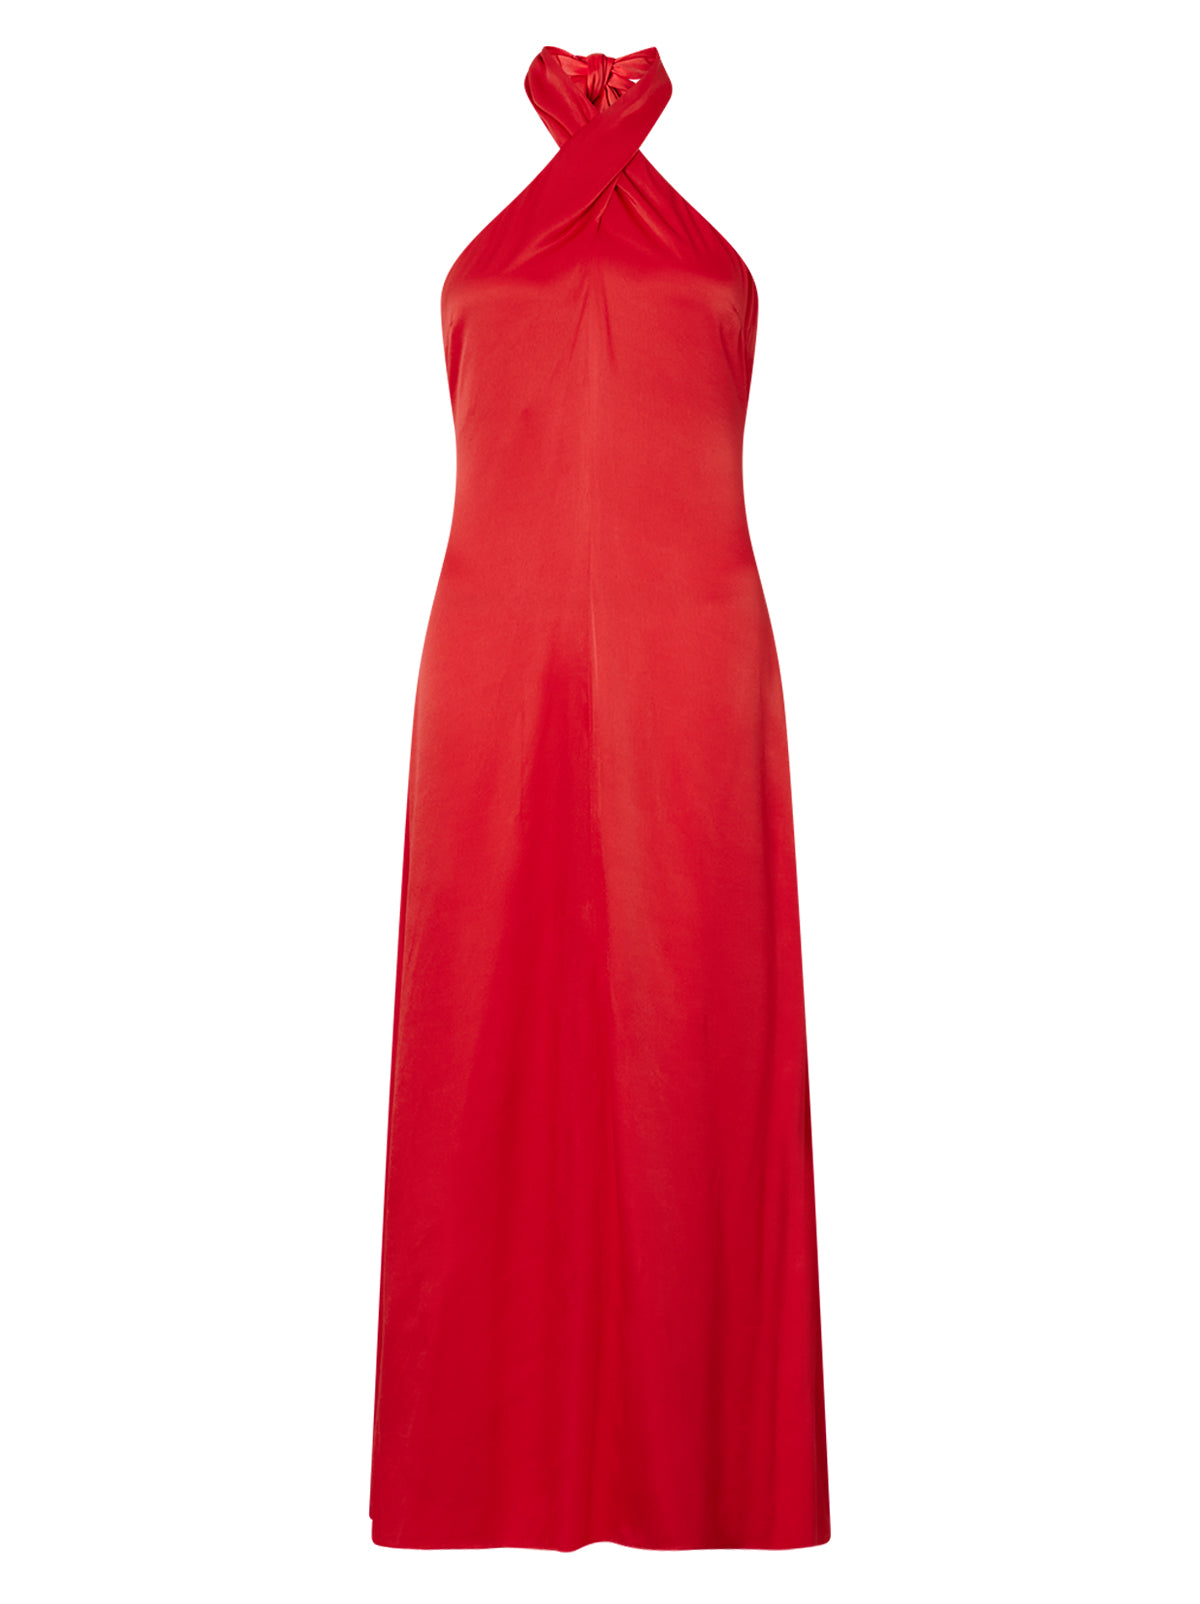 Neve Red Satin Halter Dress By KITRI Studio